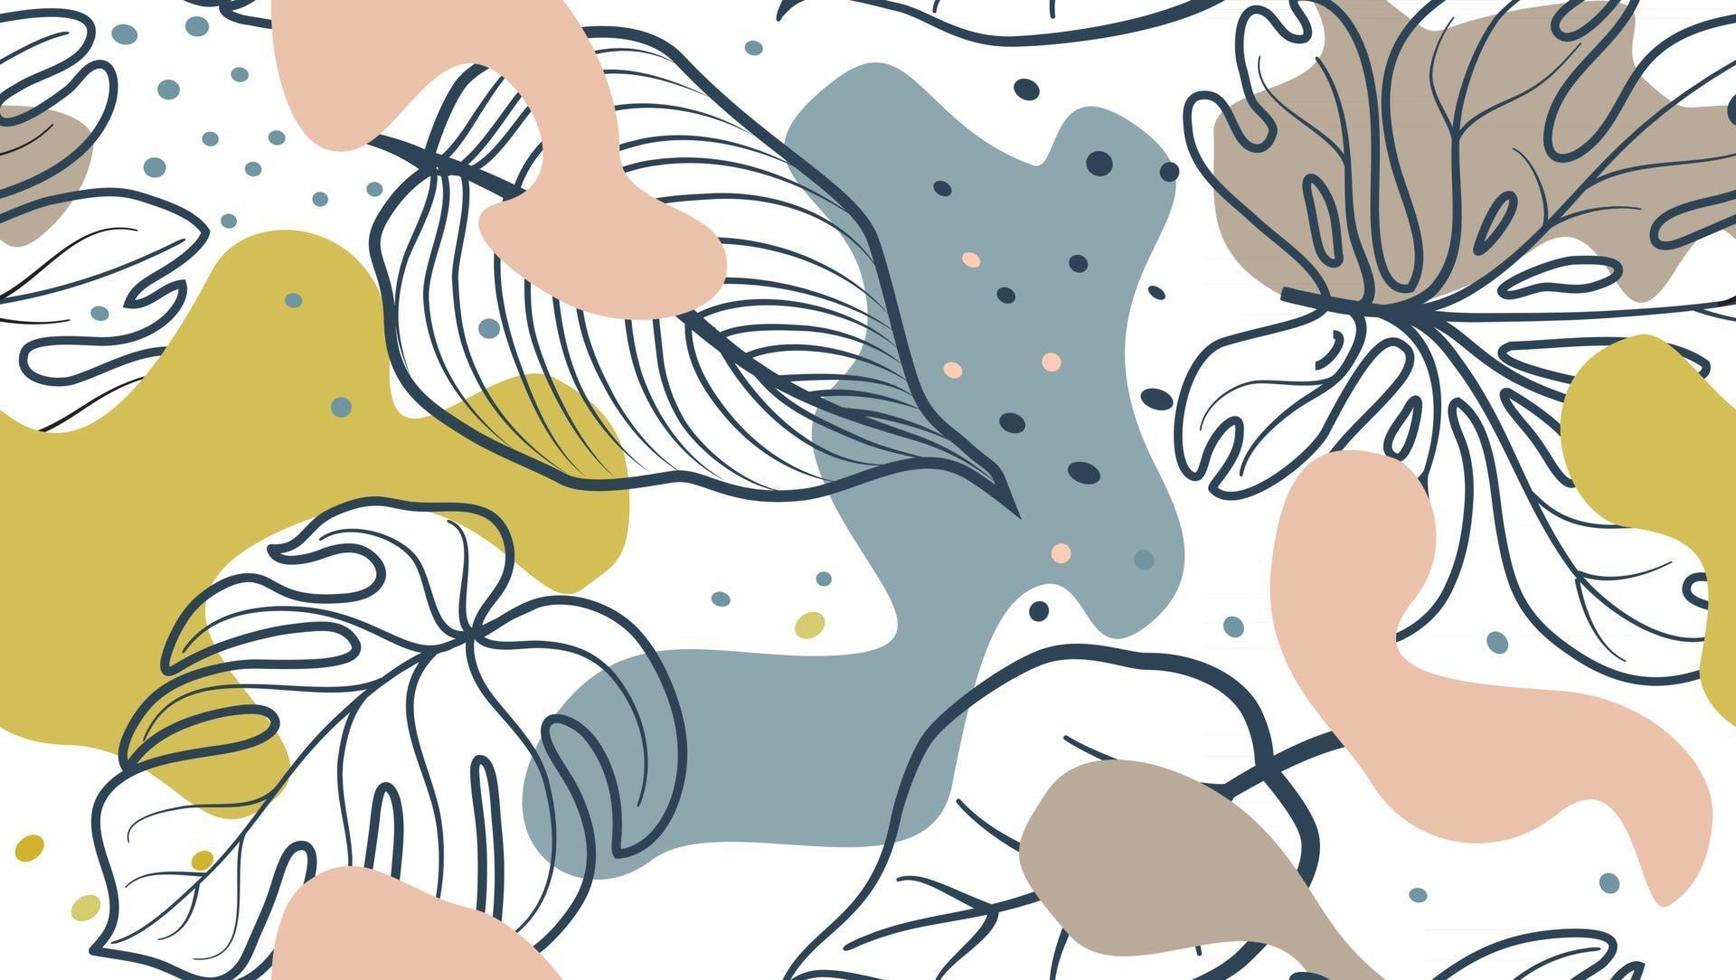 manchas orgánicas abstractas y hojas de patrones sin fisuras en un estilo moderno y elegante fondo con puntos y formas florales que fluyen vector